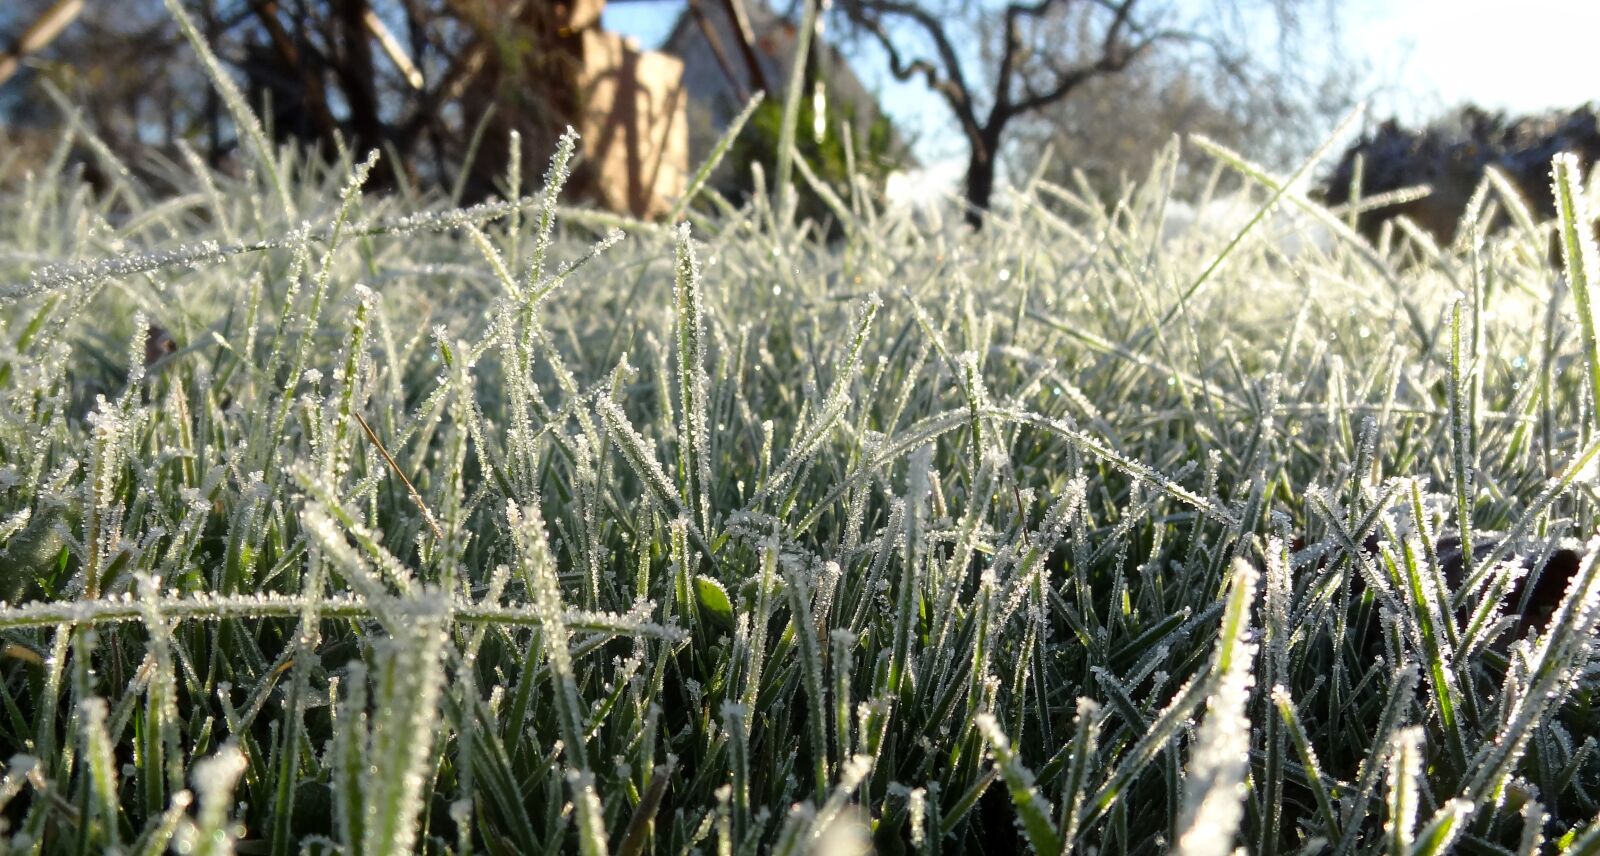 Sony DSC-HX9V sample photo. "Grass, frost, cold" photography